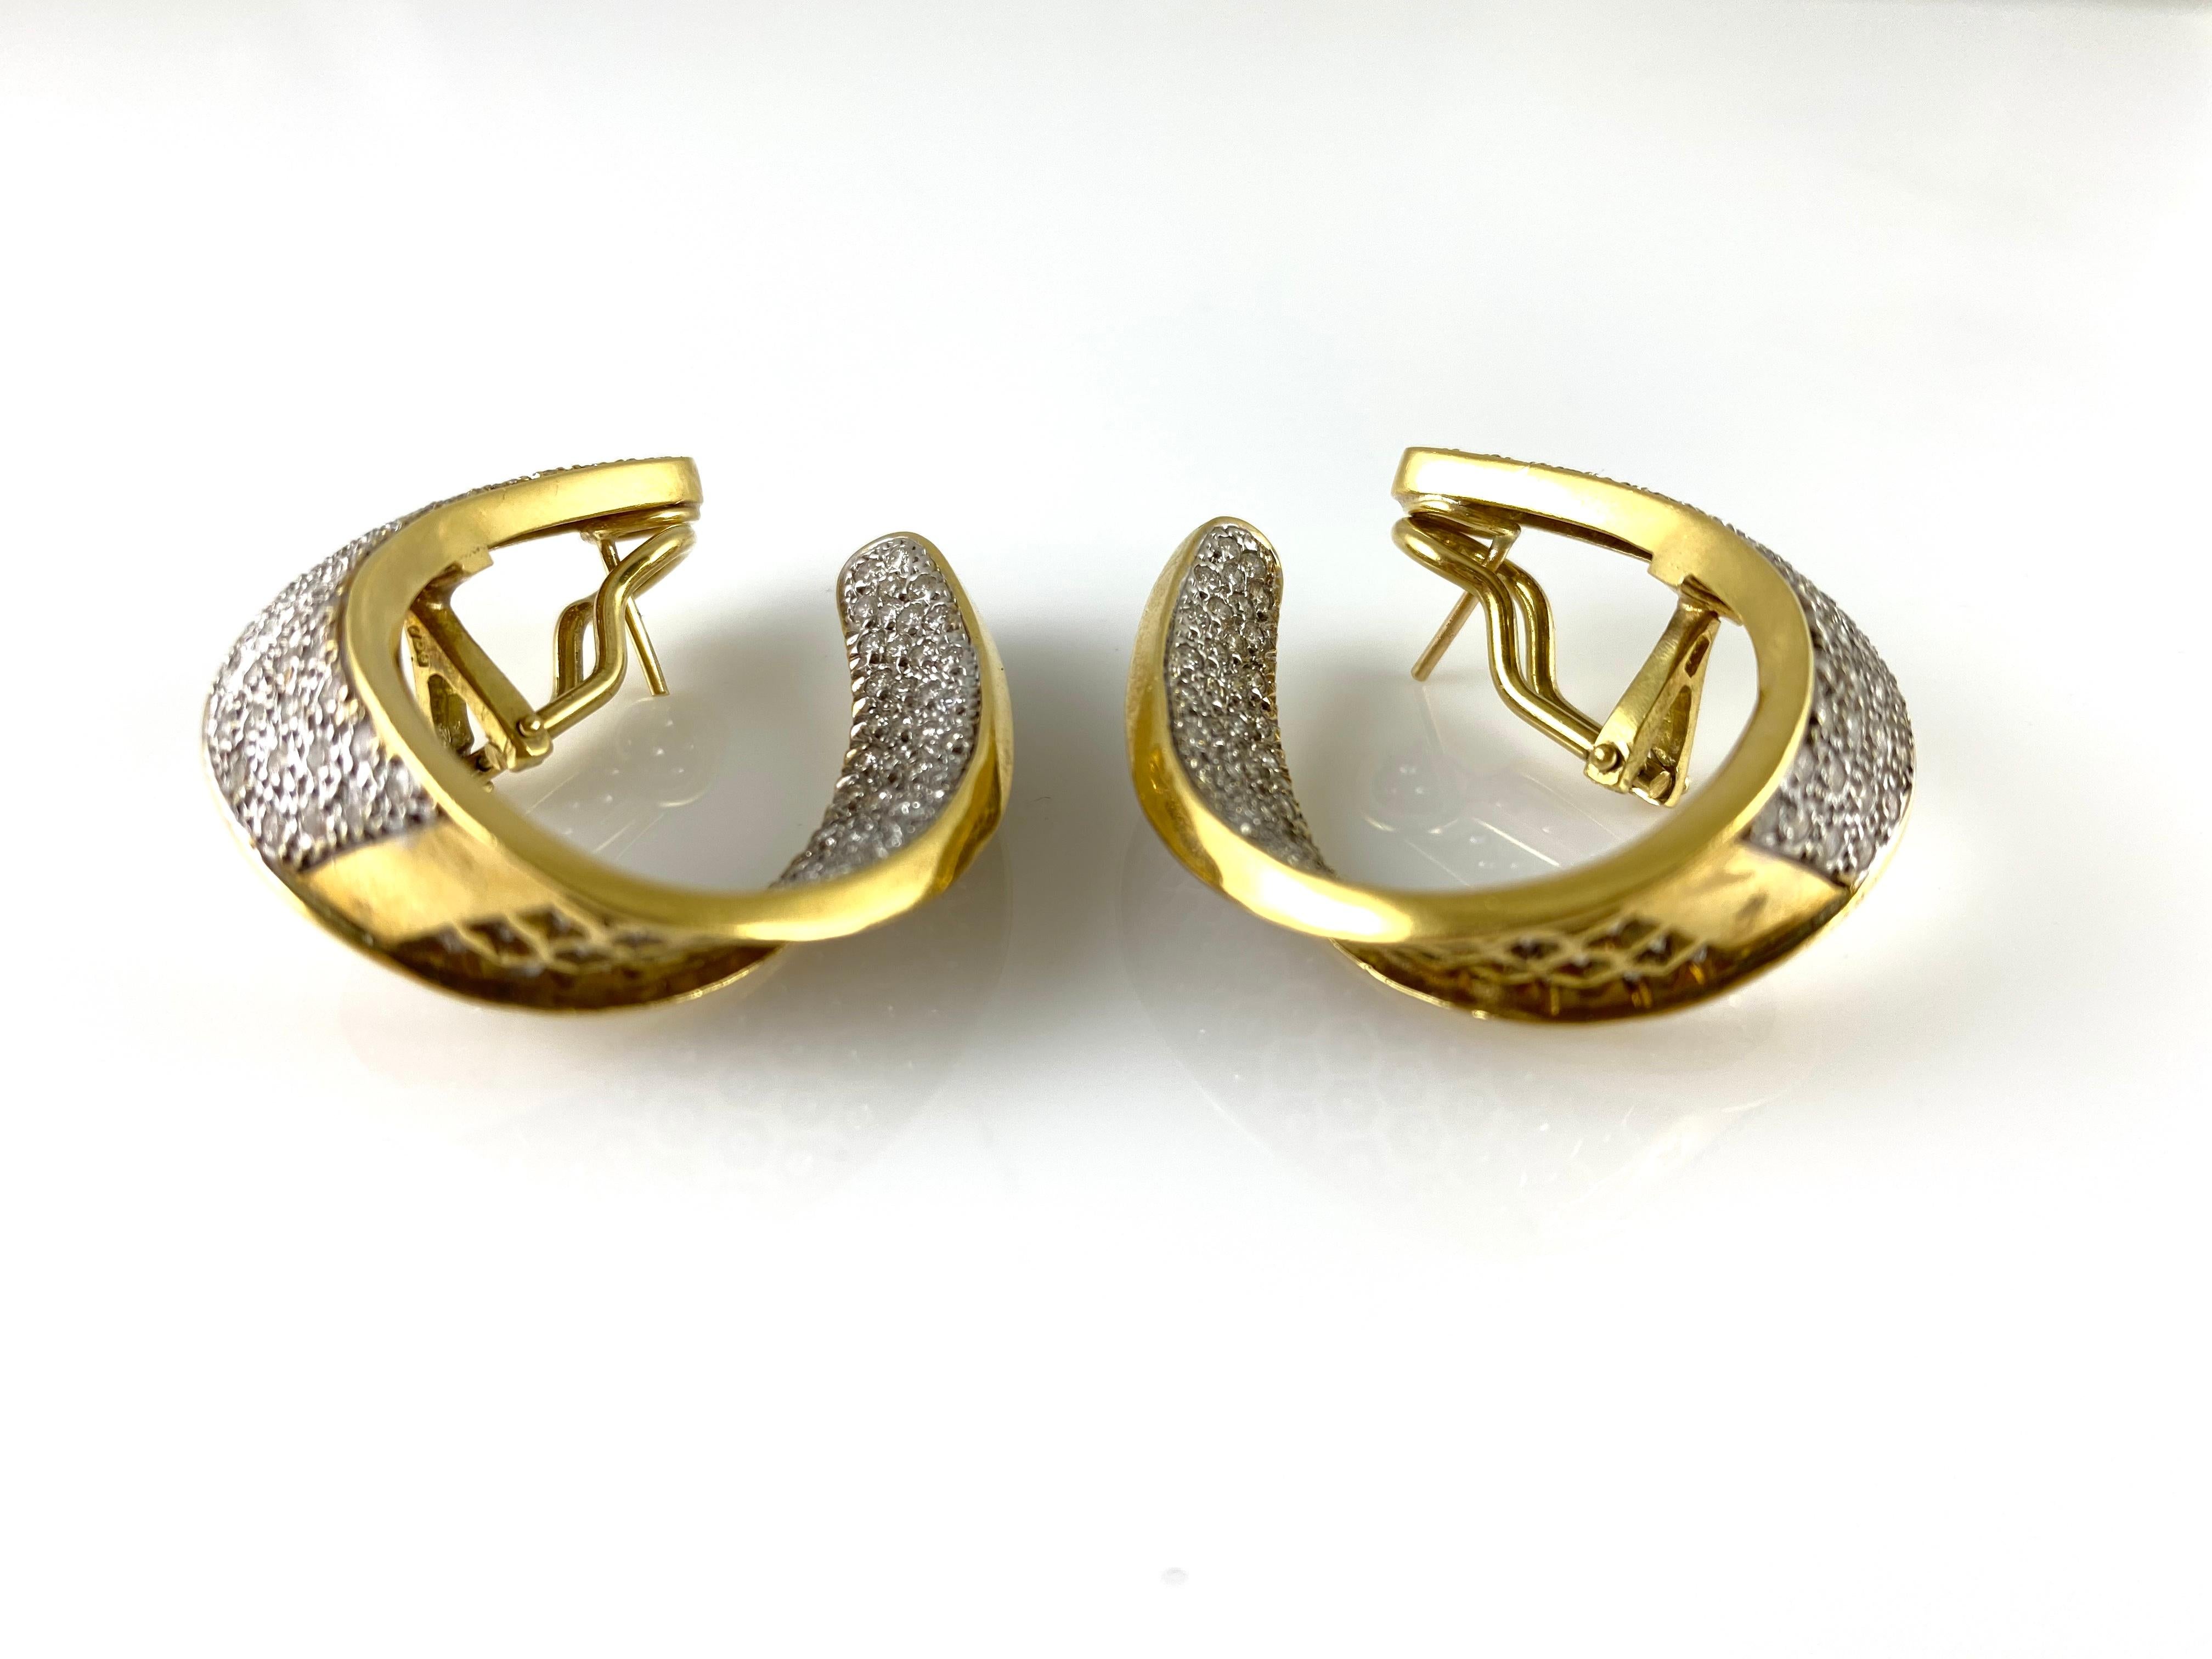 Der Ohrring ist fein in 18k Gelbgold mit Diamanten mit einem Gesamtgewicht von etwa 5,00 Karat gefertigt.
Circa 1980.